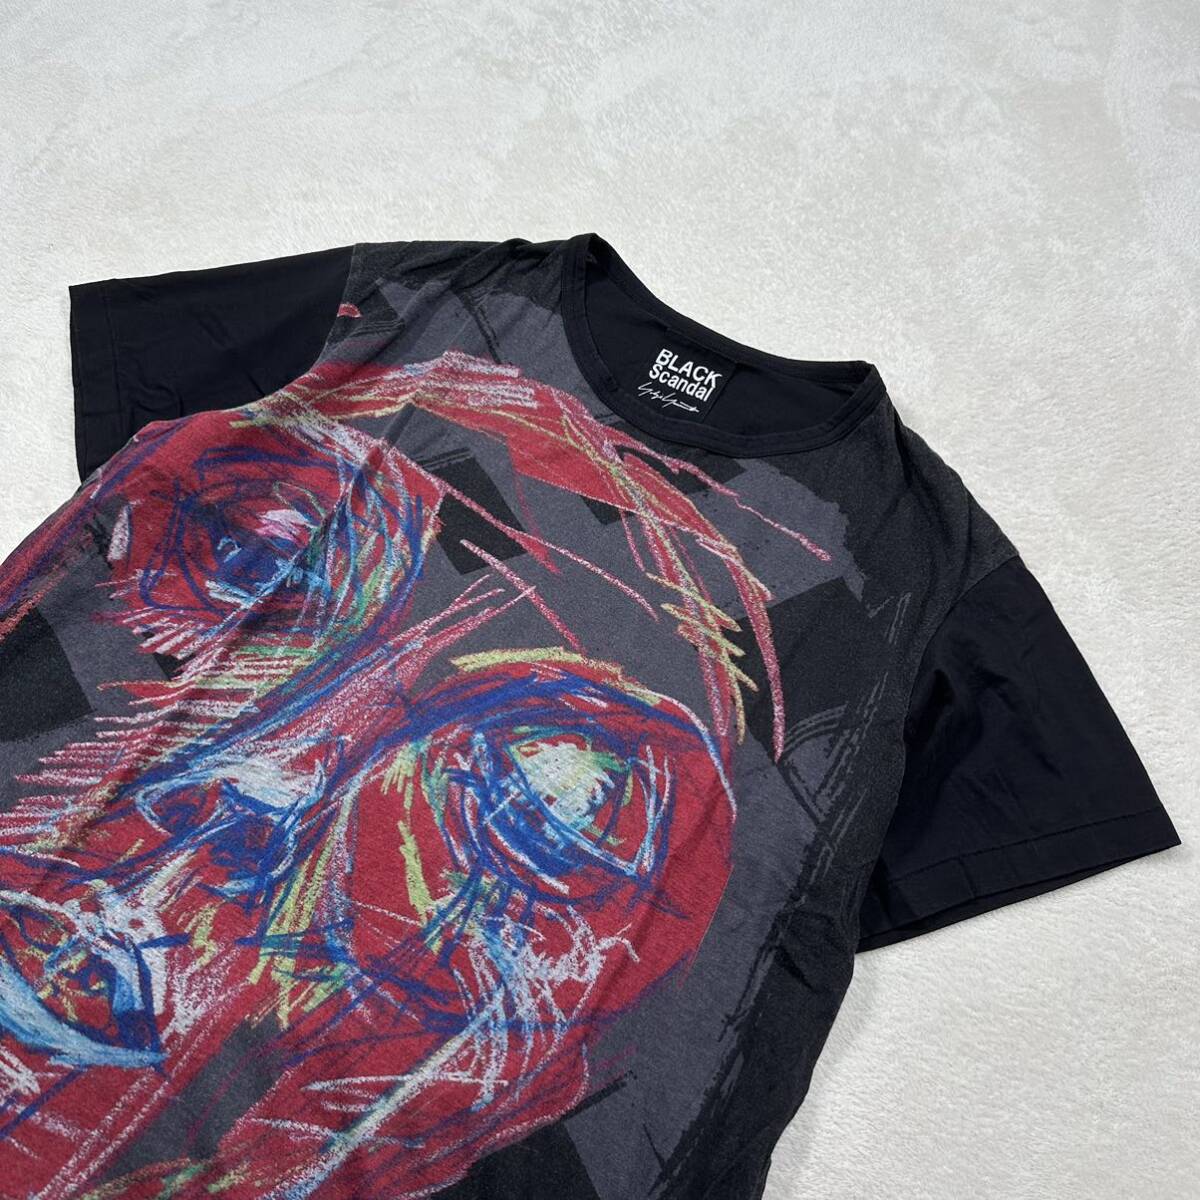 Yohji Yamamoto BLACK SCANDAL カットソー 3 ヨウジヤマモト 朝倉PT 赤顔半袖 プリント カットソー Tシャツ リヨセル70% コットン30%_画像4